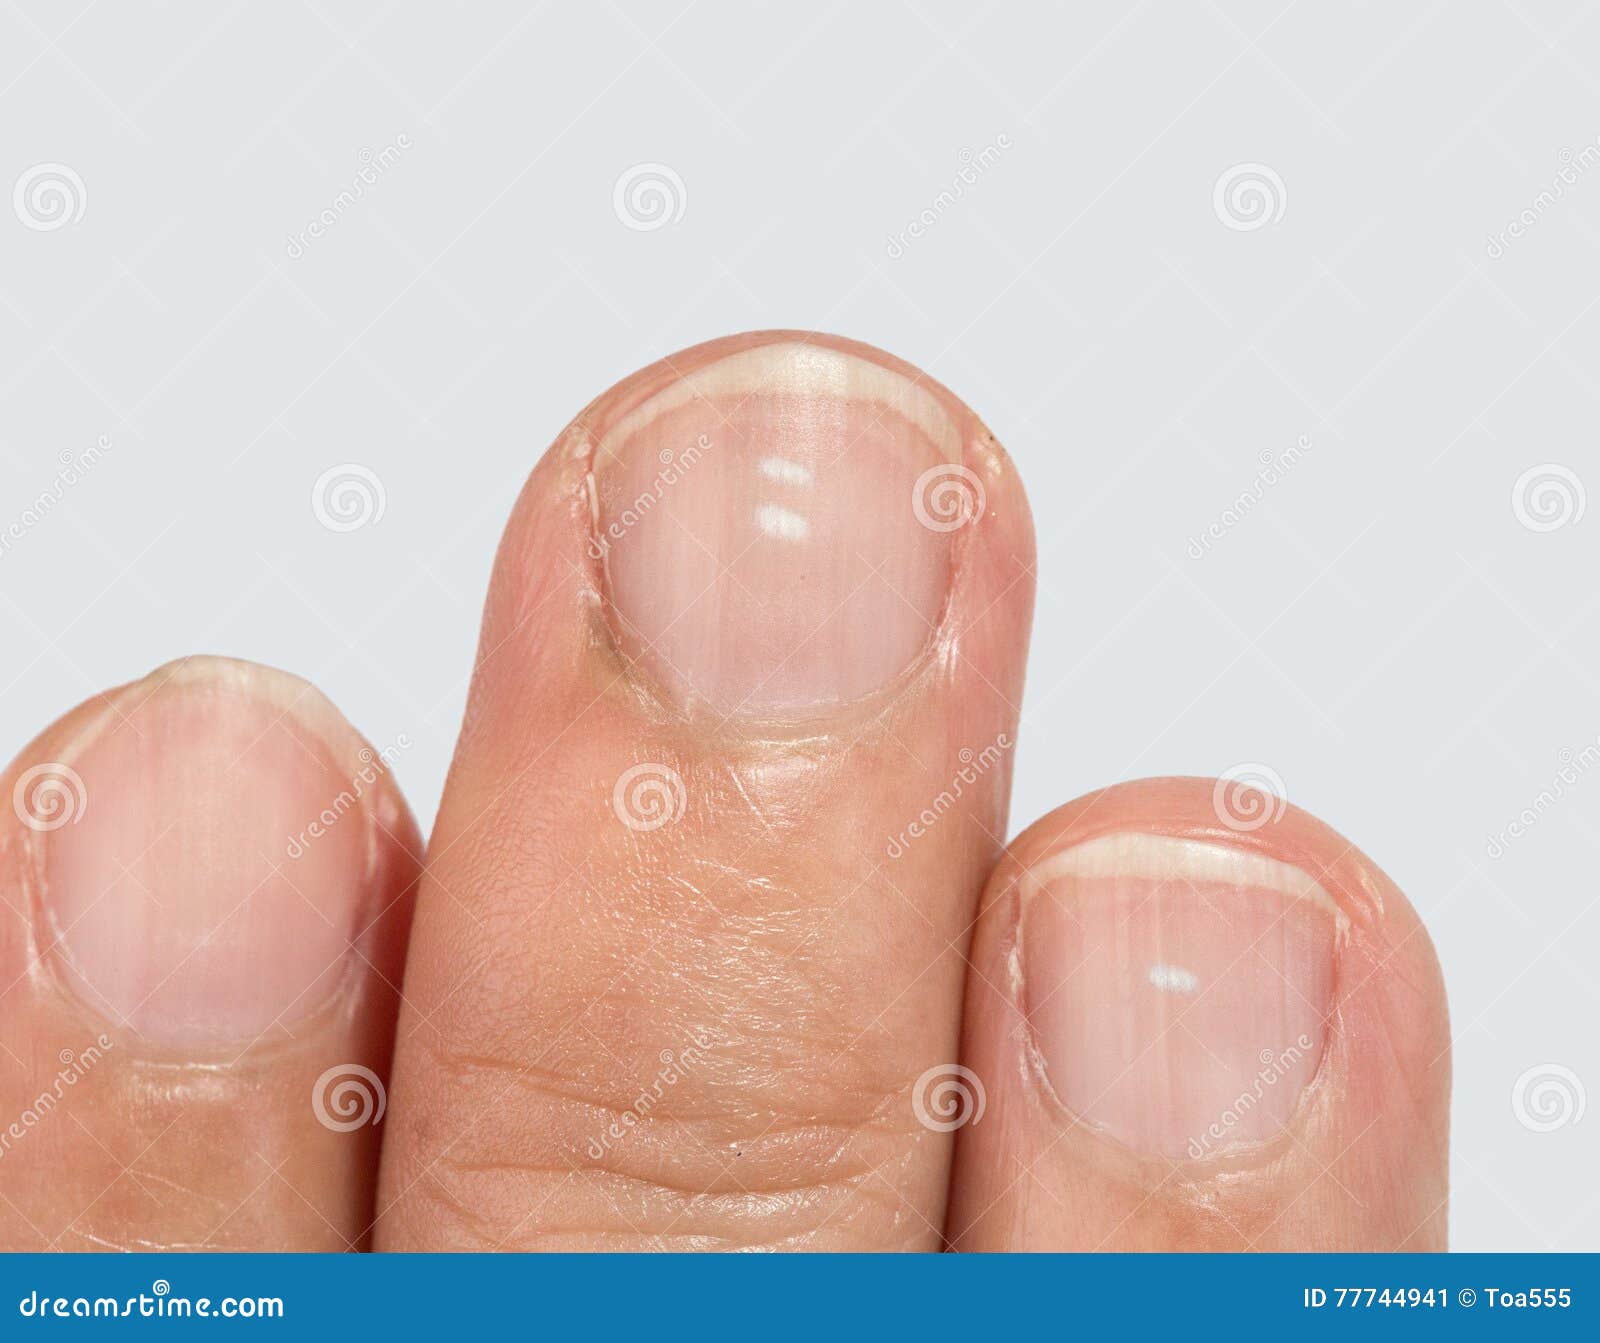 white spots on fingernails